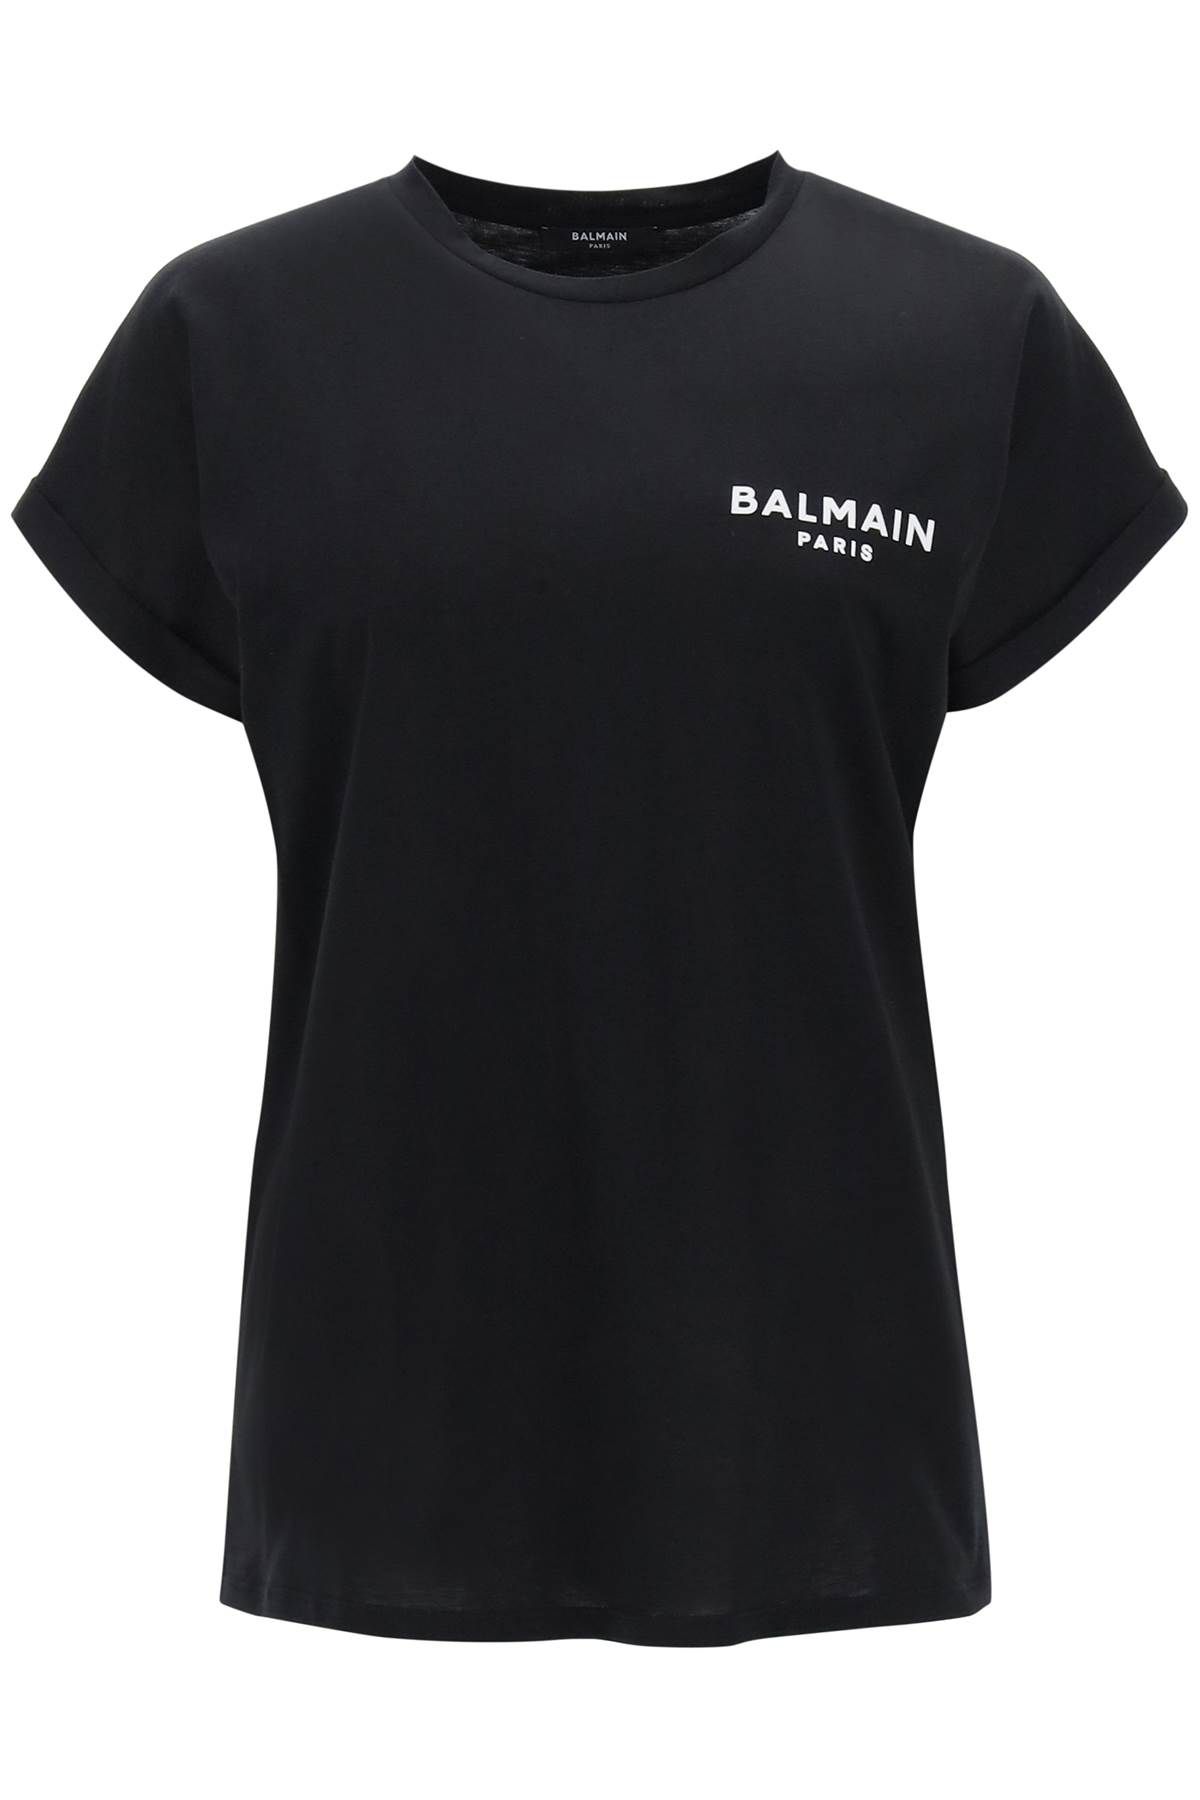 Balmain BALMAIN t-shirt with flocked logo print